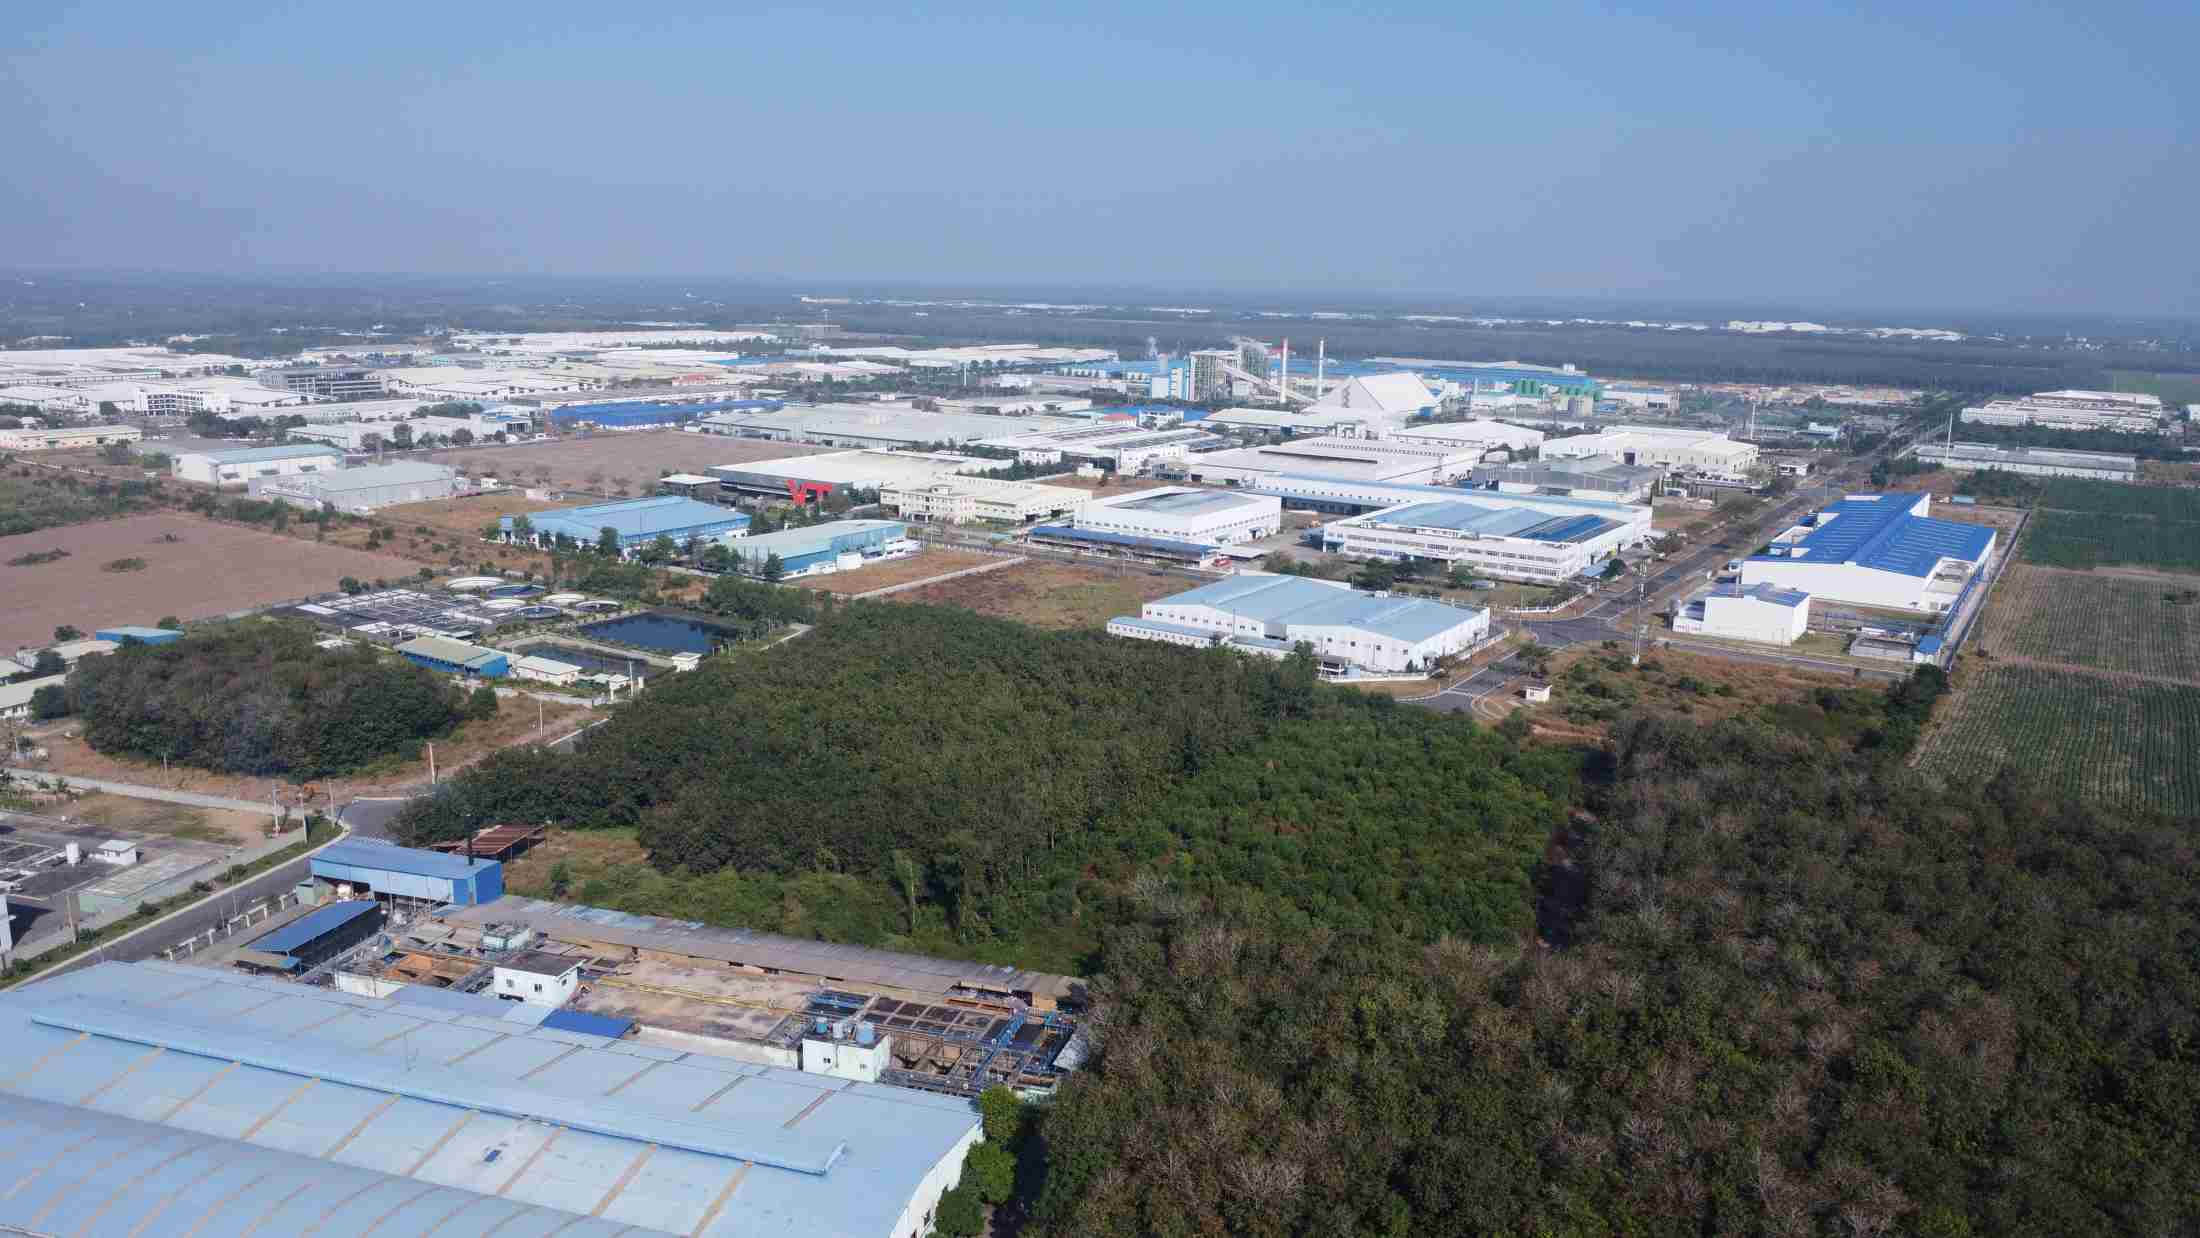 An Tây có 2 khu công nghiệp lớn là Khu công nghiệp Quốc tế Protrade (rộng 384 ha), Khu công nghiệp Việt Hương II (250 ha). Trong đó, có 1 nhà máy sản xuất giấy có số vốn đăng ký lên tới 1 tỉ USD.